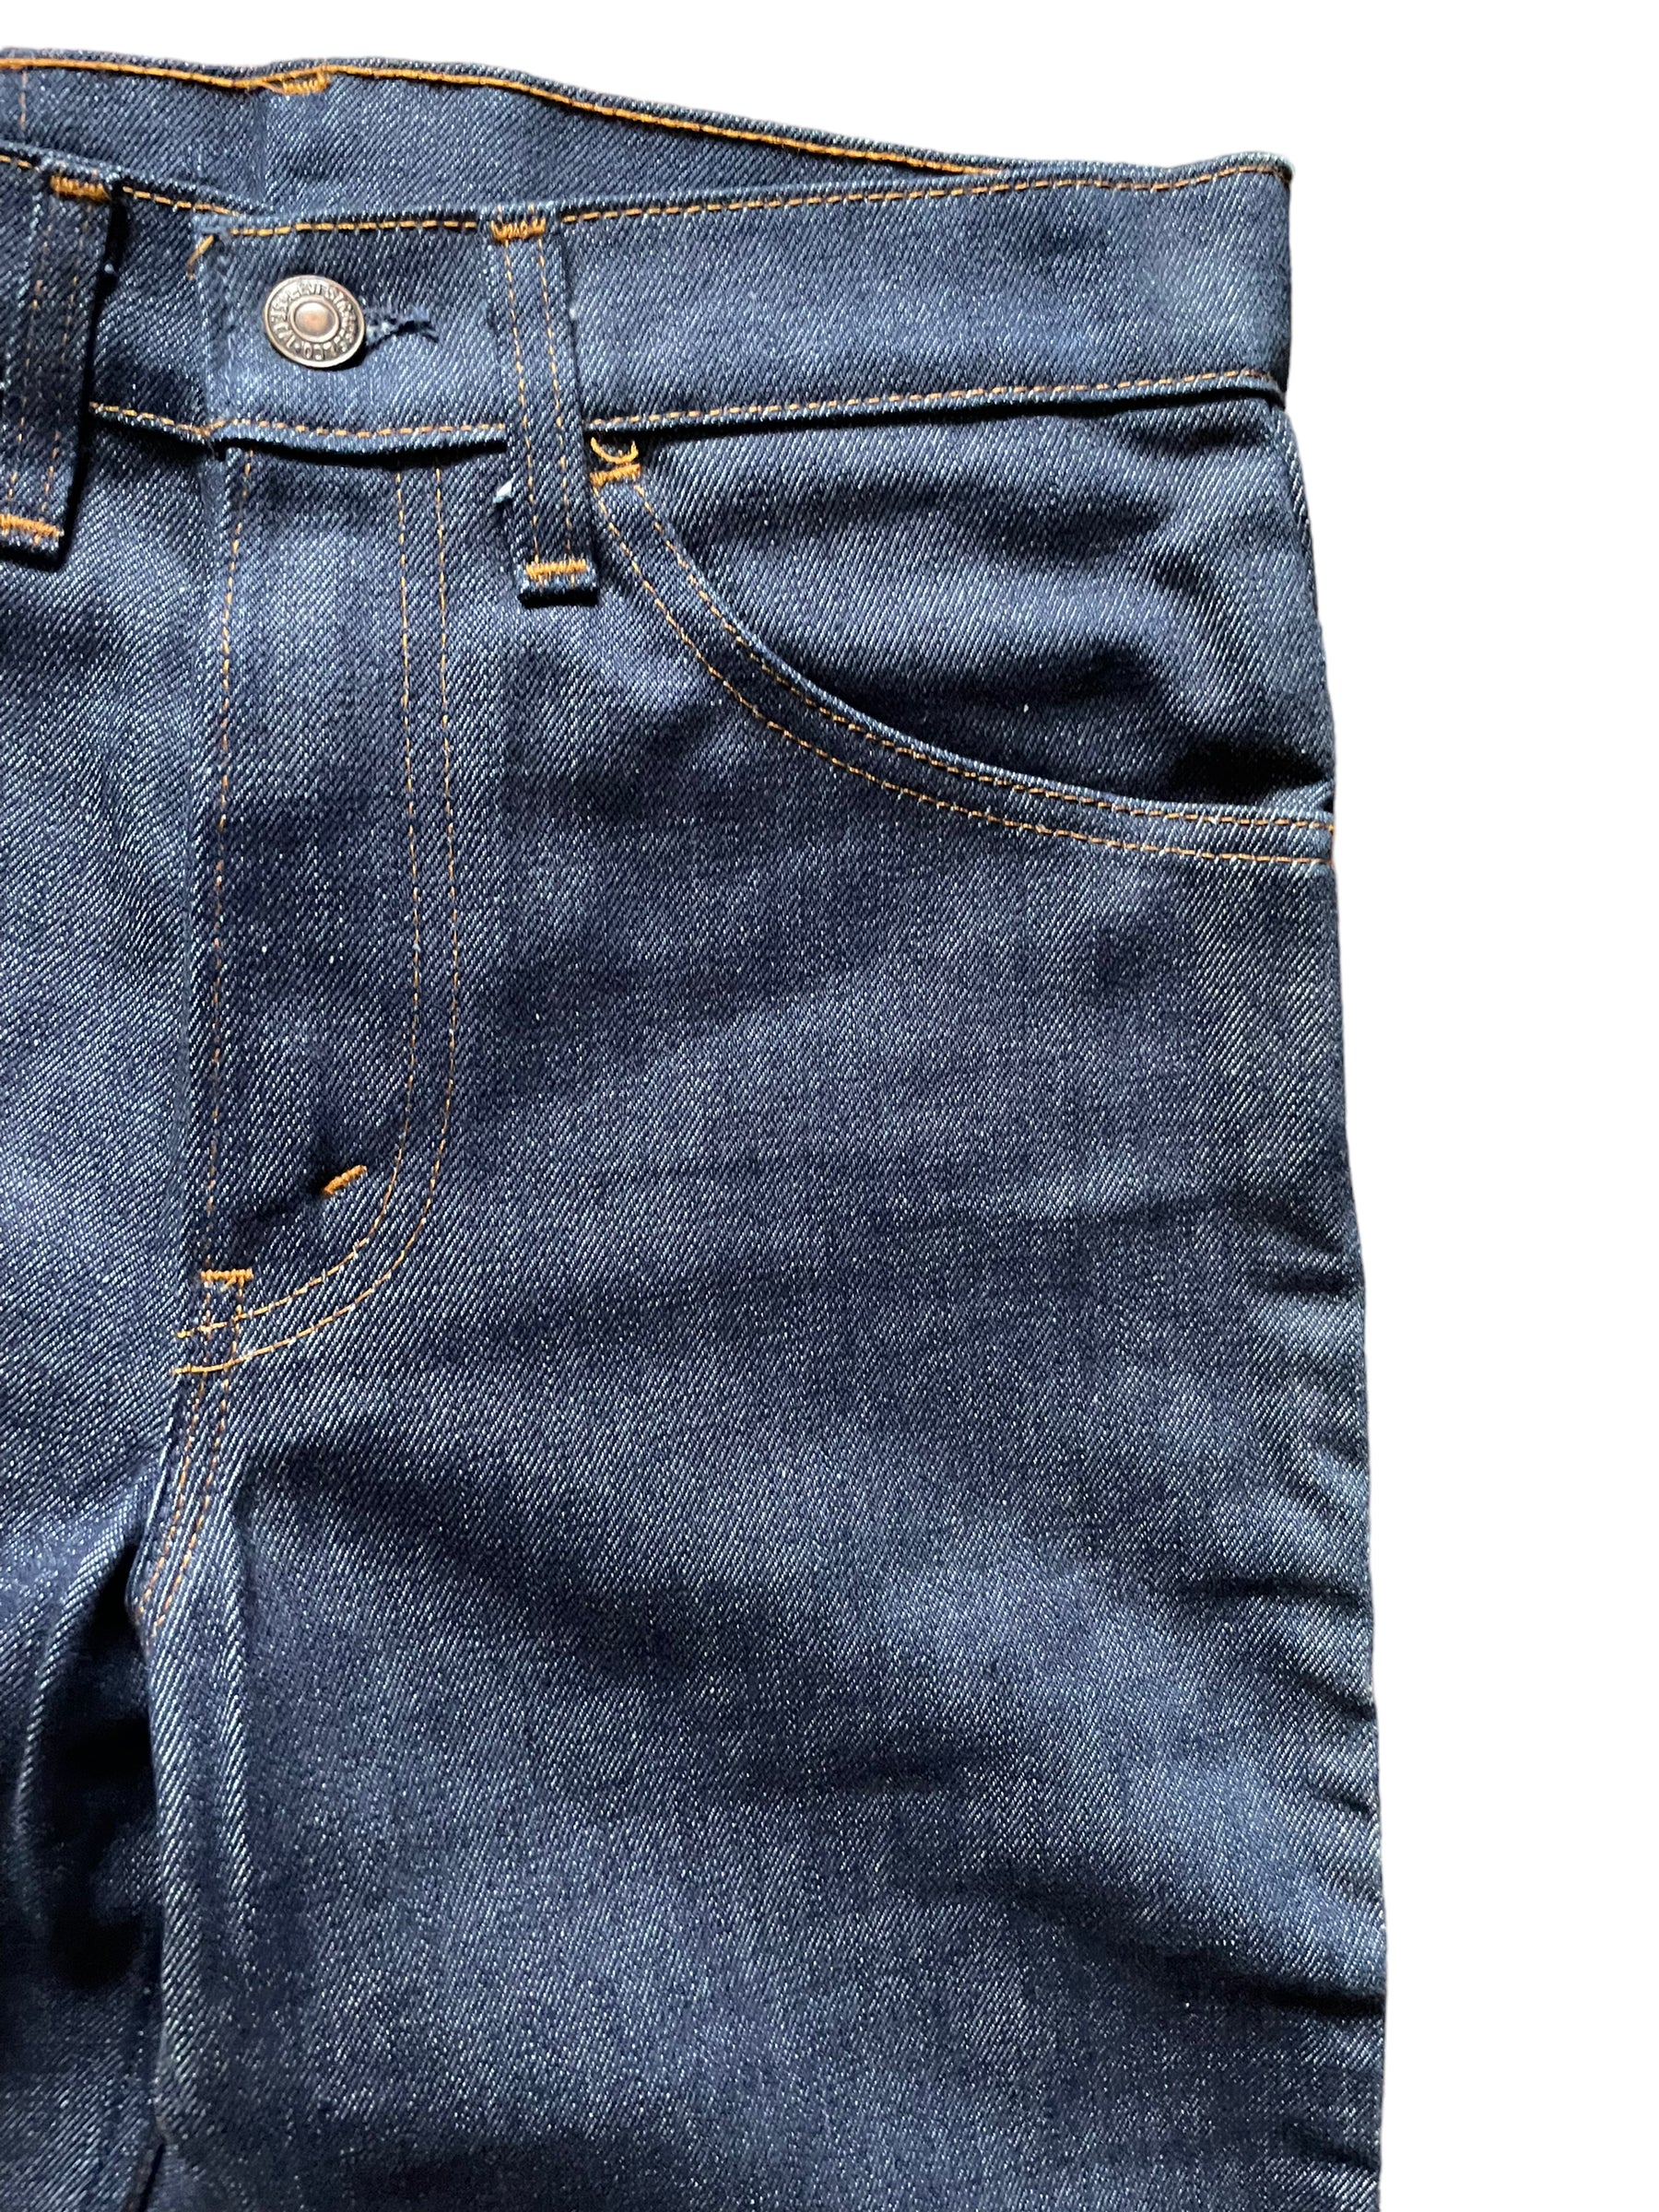 Front left pocket of Vintage NOS Levi's 519 Straight Legs 29x32 | Barn Owl Vintage Seattle | Vintage Deadstock Denim